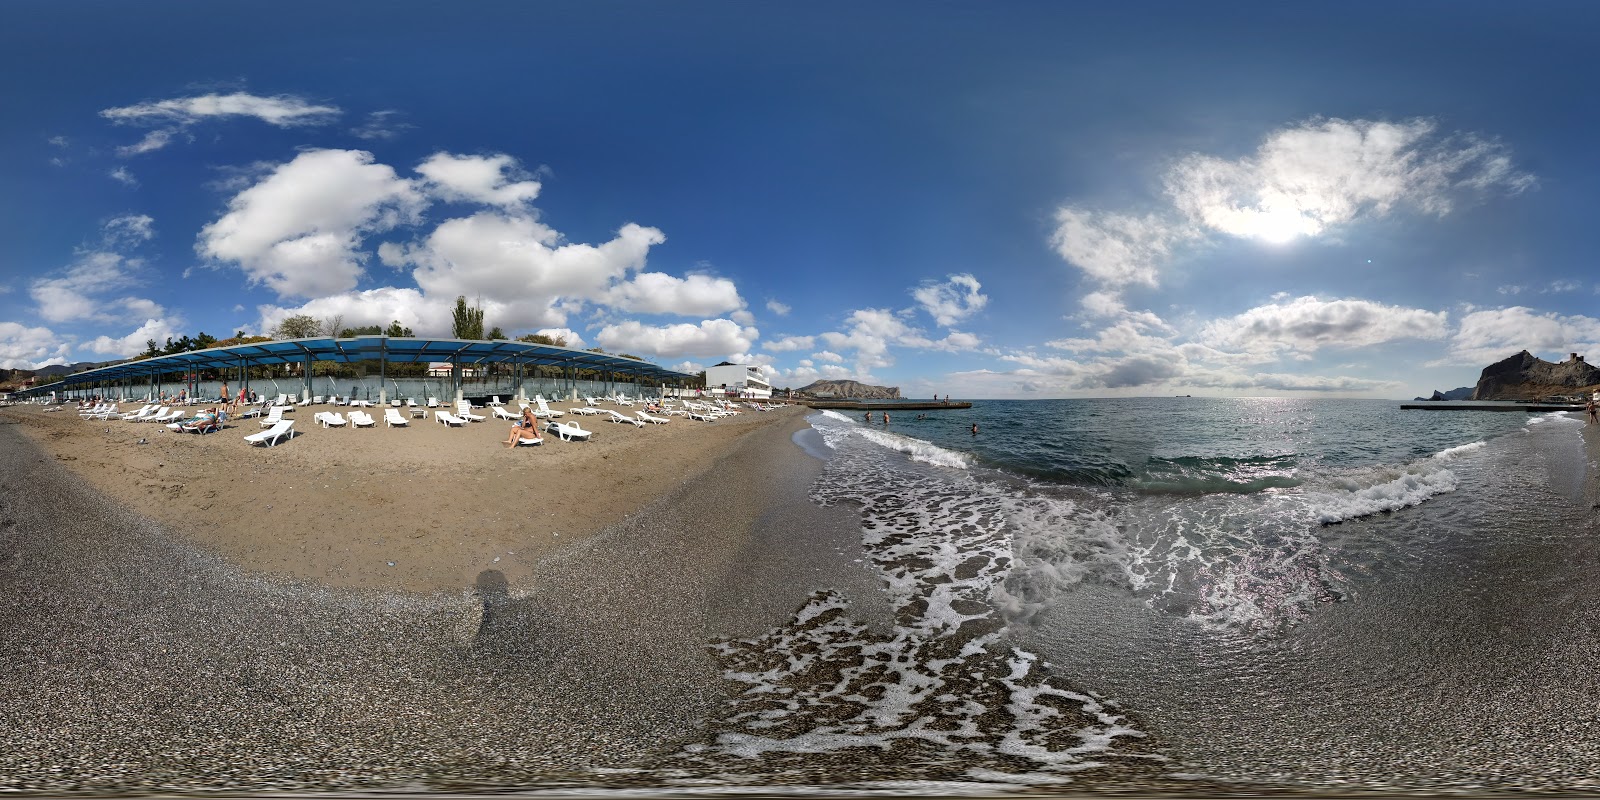 Fotografie cu Rassvet Beach - locul popular printre cunoscătorii de relaxare